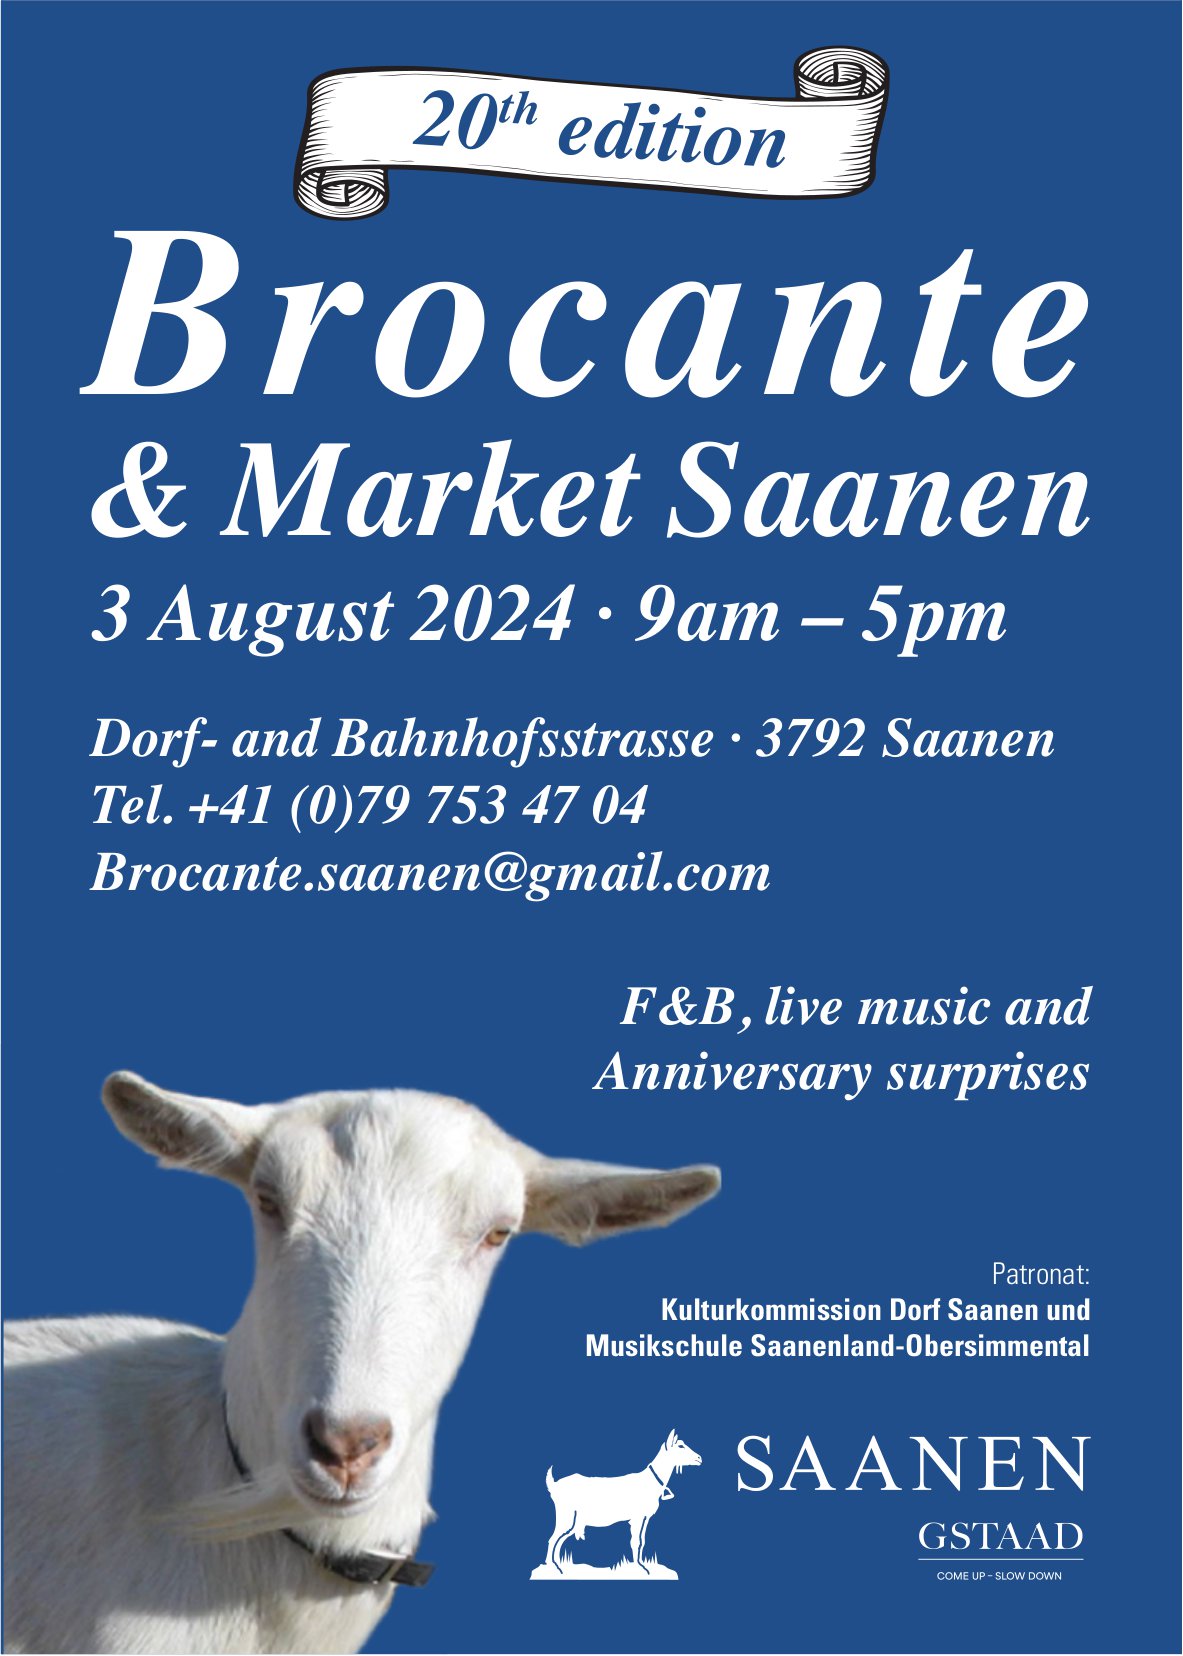 Broccante & Market, 3. August, Dorf- and Bahnhofsstrasse, Saanen